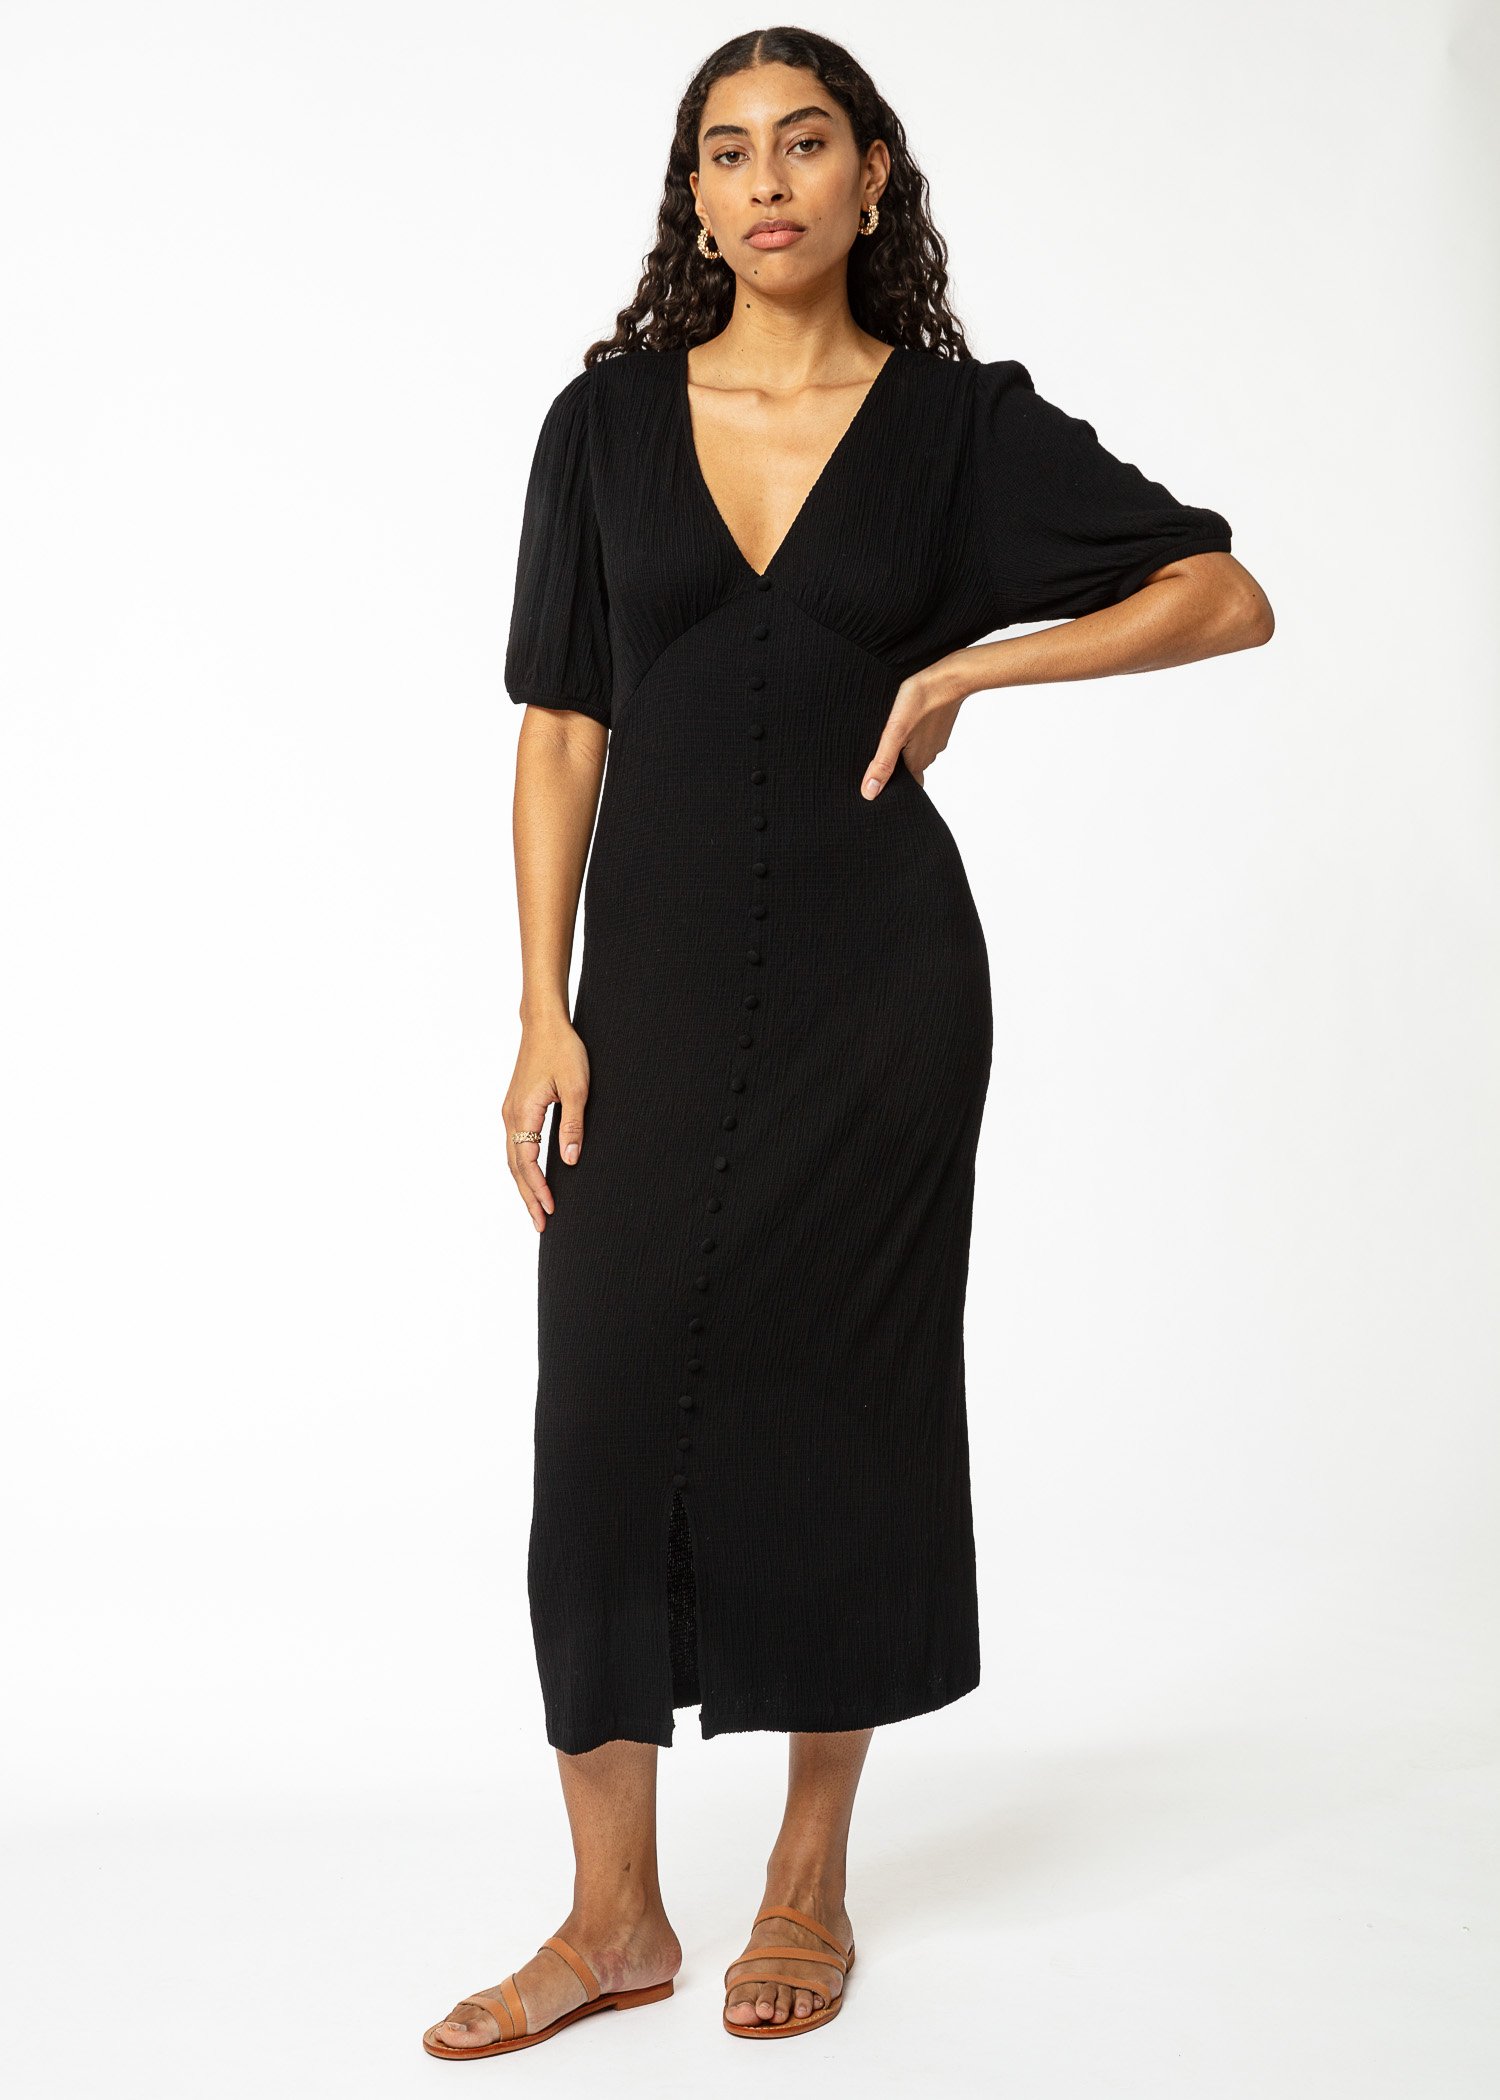 Black short sleeved dress